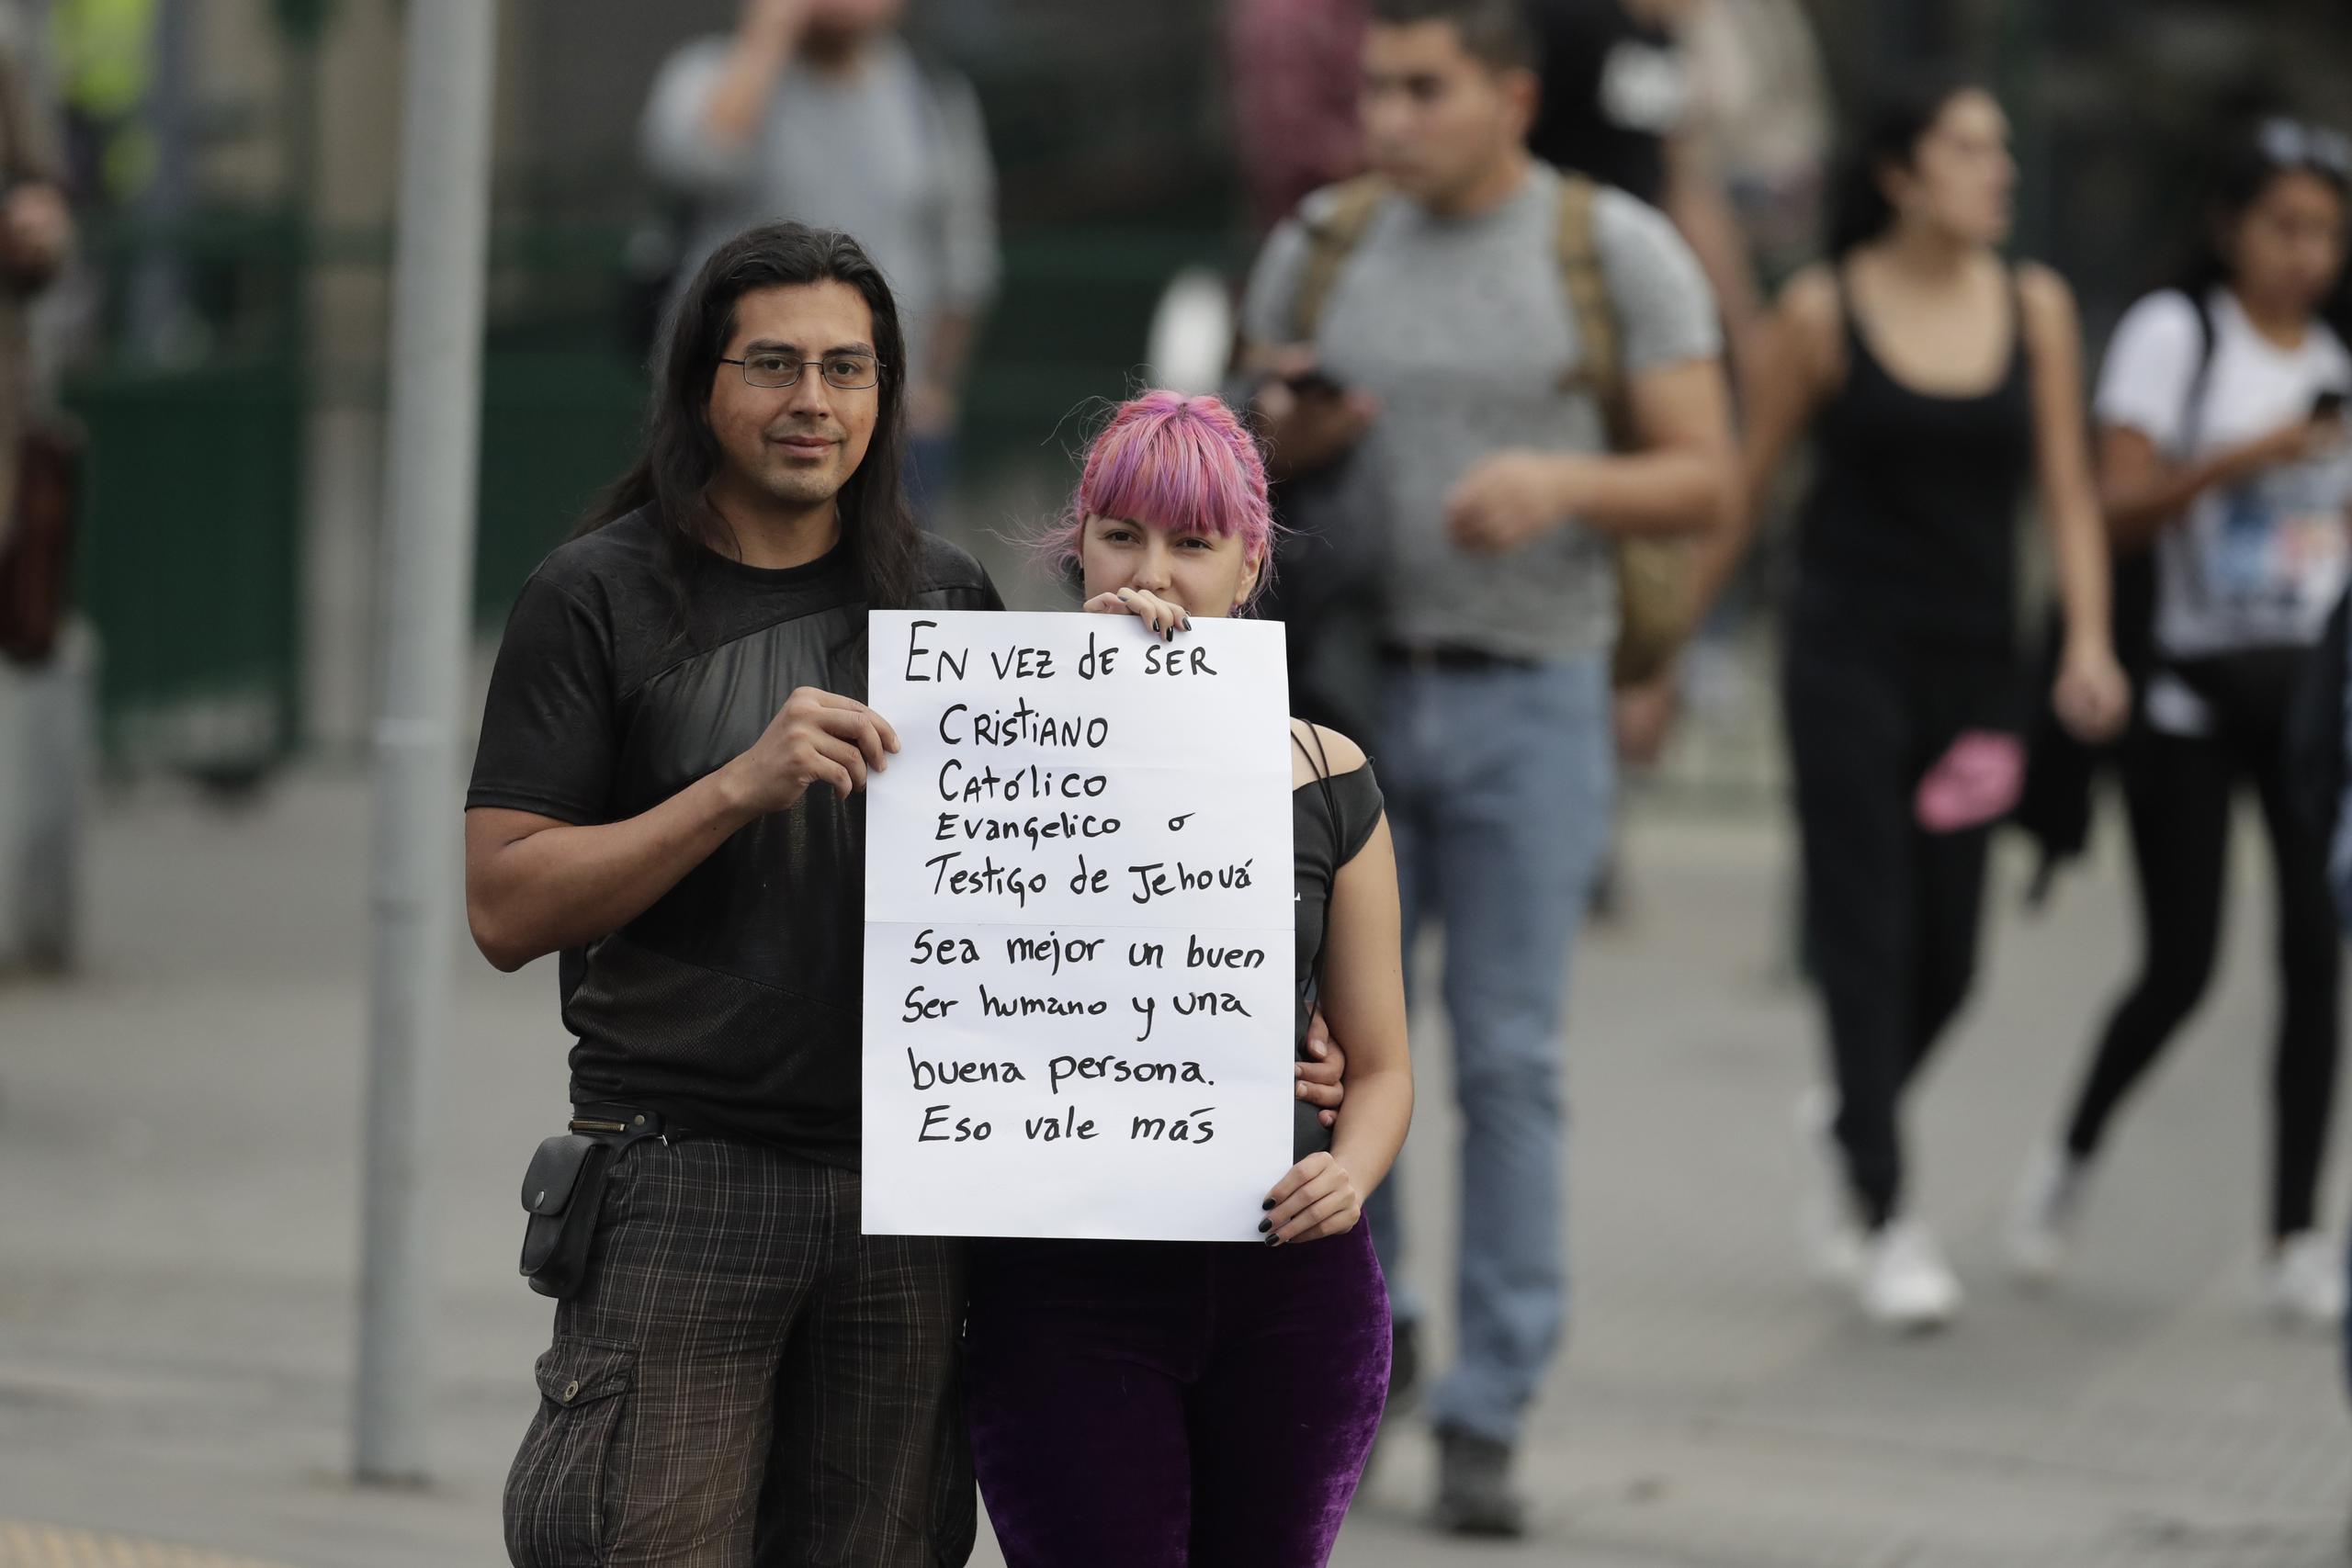 Una pareja que espera al papa Francisco en Santiago de Chile sostiene una pancarta en la que se lee: "En vez de ser cristiano, católico, evangélico o testigo de Jehová, sea mejor un buen ser humano y una buena persona. Eso vale más". (AP)